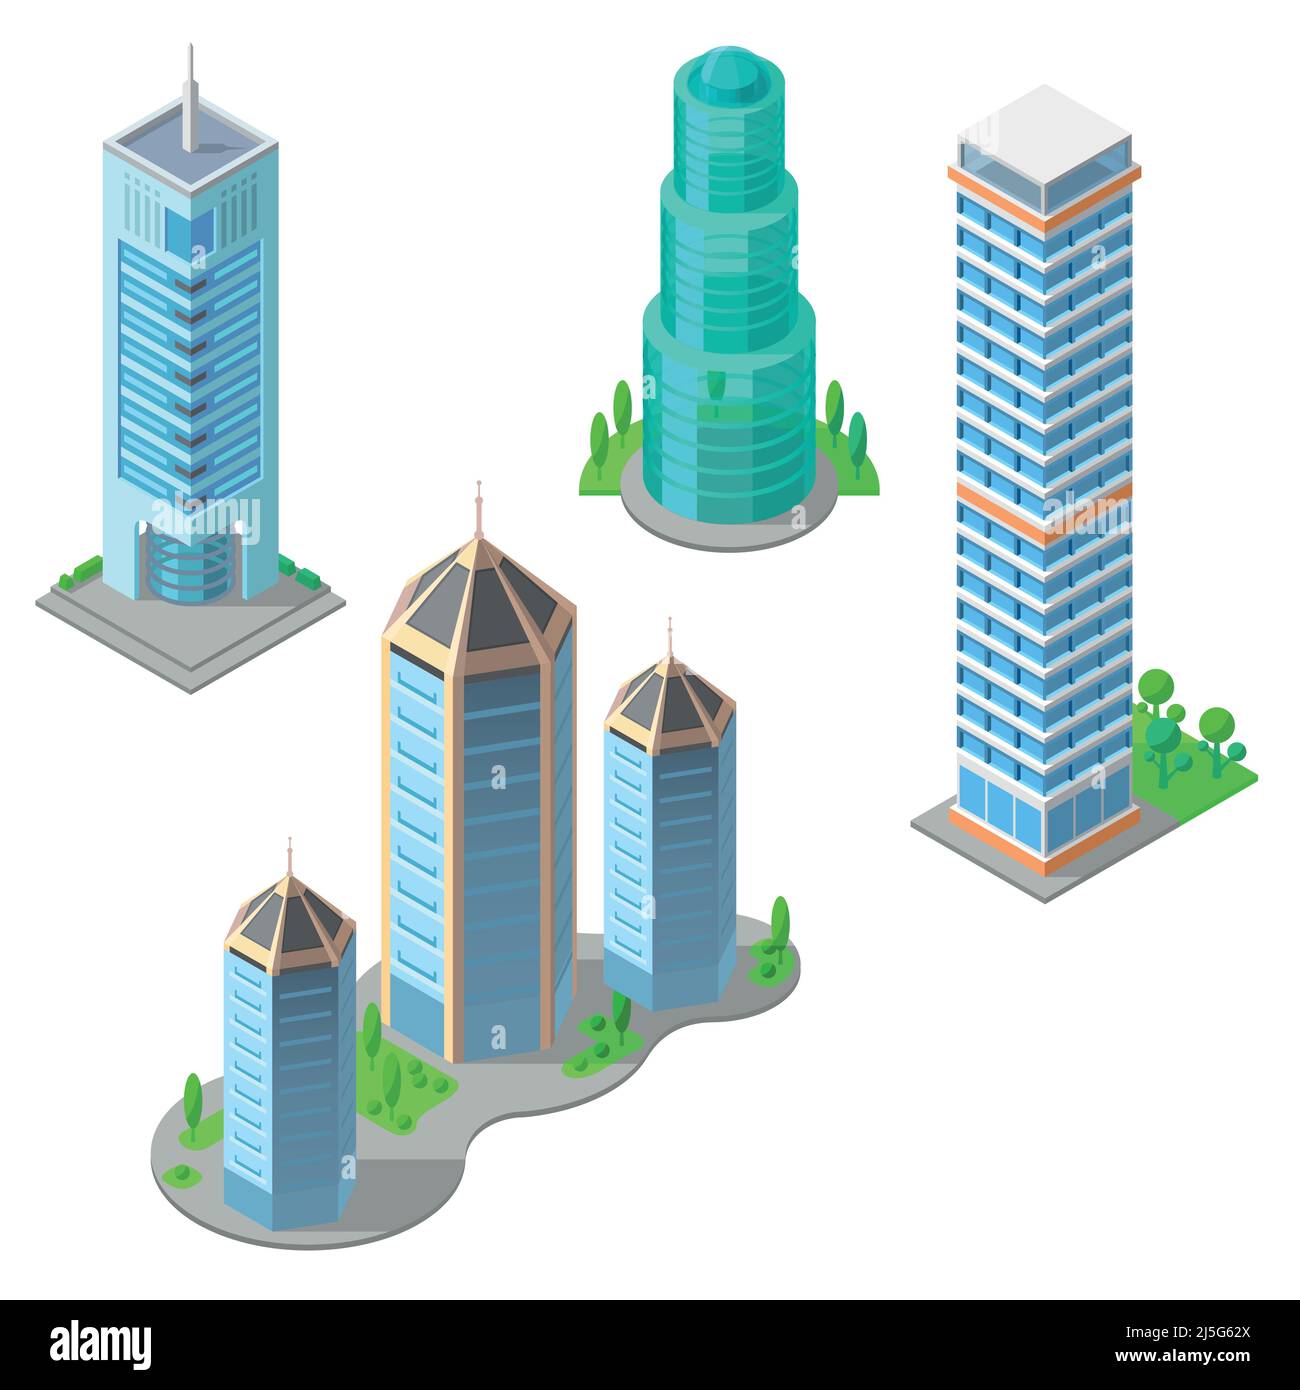 Vektor isometrische Reihe von modernen Gebäuden, städtischen Wolkenkratzern, hohe Business-Türme, Wohn mehrstöckigen Gebäuden isoliert auf dem Hintergrund. Archi Stock Vektor